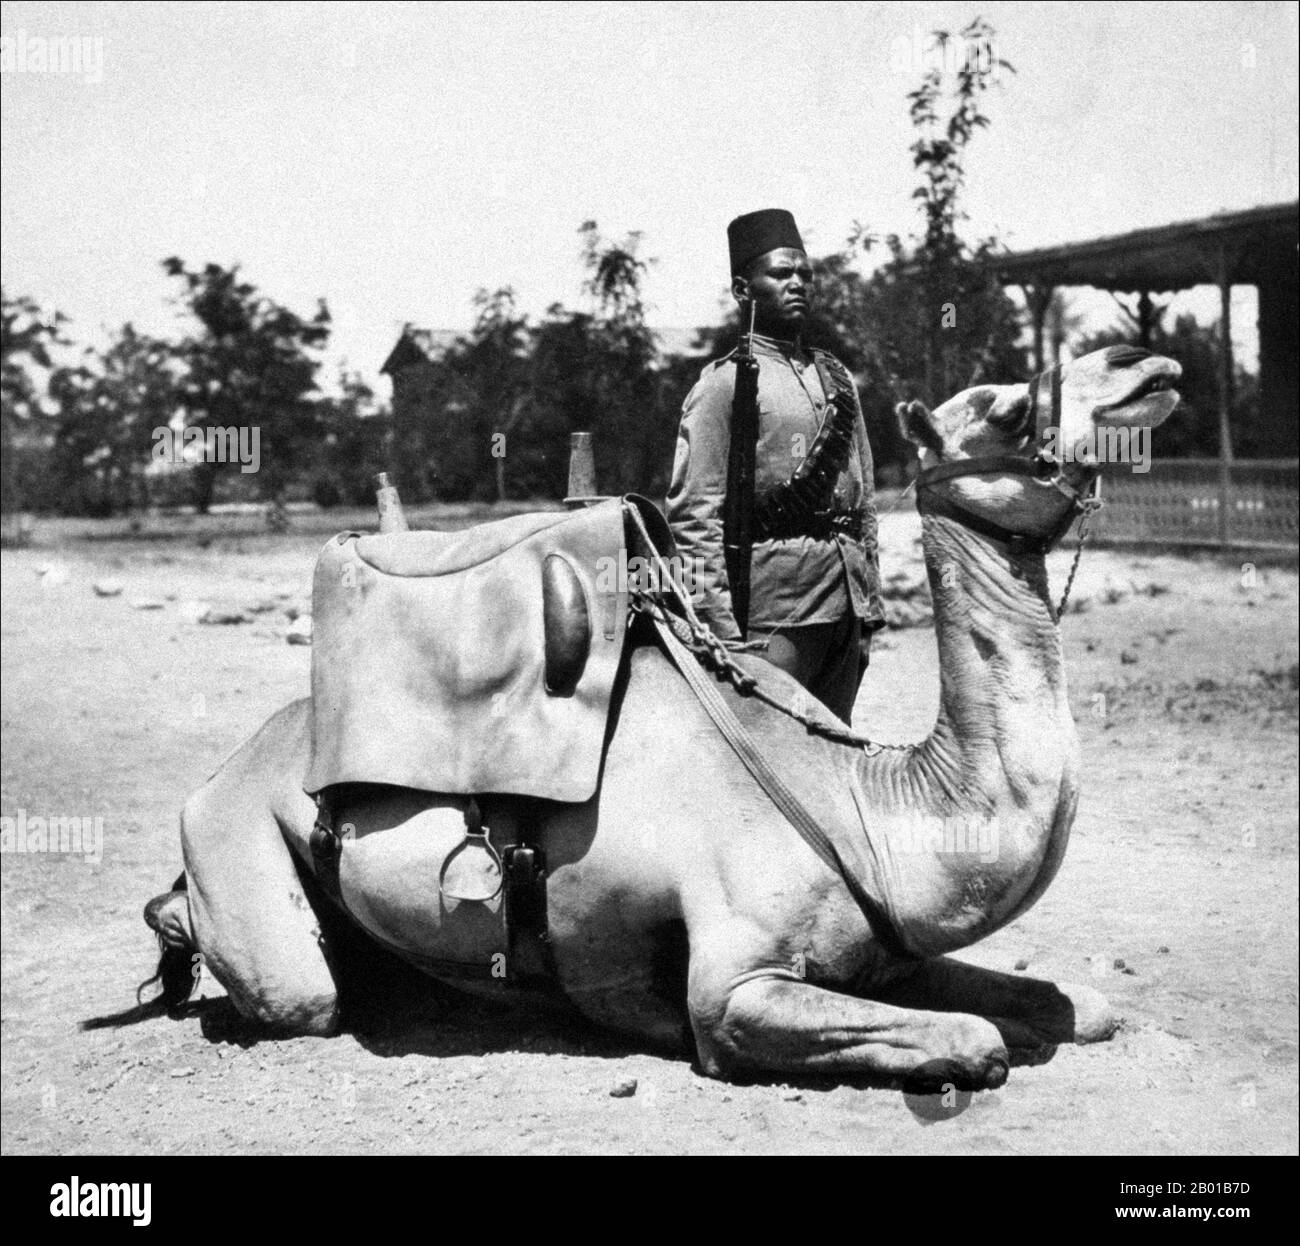 Sudan: Mitglied des kaiserlichen sudanesischen Kamelkorps des anglo-ägyptischen Sudan. Foto von Frank George Corper (8. Mai 1855 - 18. Juni 1924) c.. 1900-1920. Der Begriff Anglo-ägyptischer Sudan bezieht sich auf den Zeitraum zwischen 1891 und 1956, als der Sudan als Kondominium von Ägypten und dem Vereinigten Königreich verwaltet wurde. Der Sudan (bestehend aus dem heutigen Sudan und dem Südsudan) wurde de jure legal zwischen Ägypten und dem britischen Imperium geteilt, wurde aber de facto von letzterem kontrolliert, wobei Ägypten in Wirklichkeit nur begrenzte lokale Macht genießt, da Ägypten selbst unter zunehmenden britischen Einfluss fiel. Stockfoto